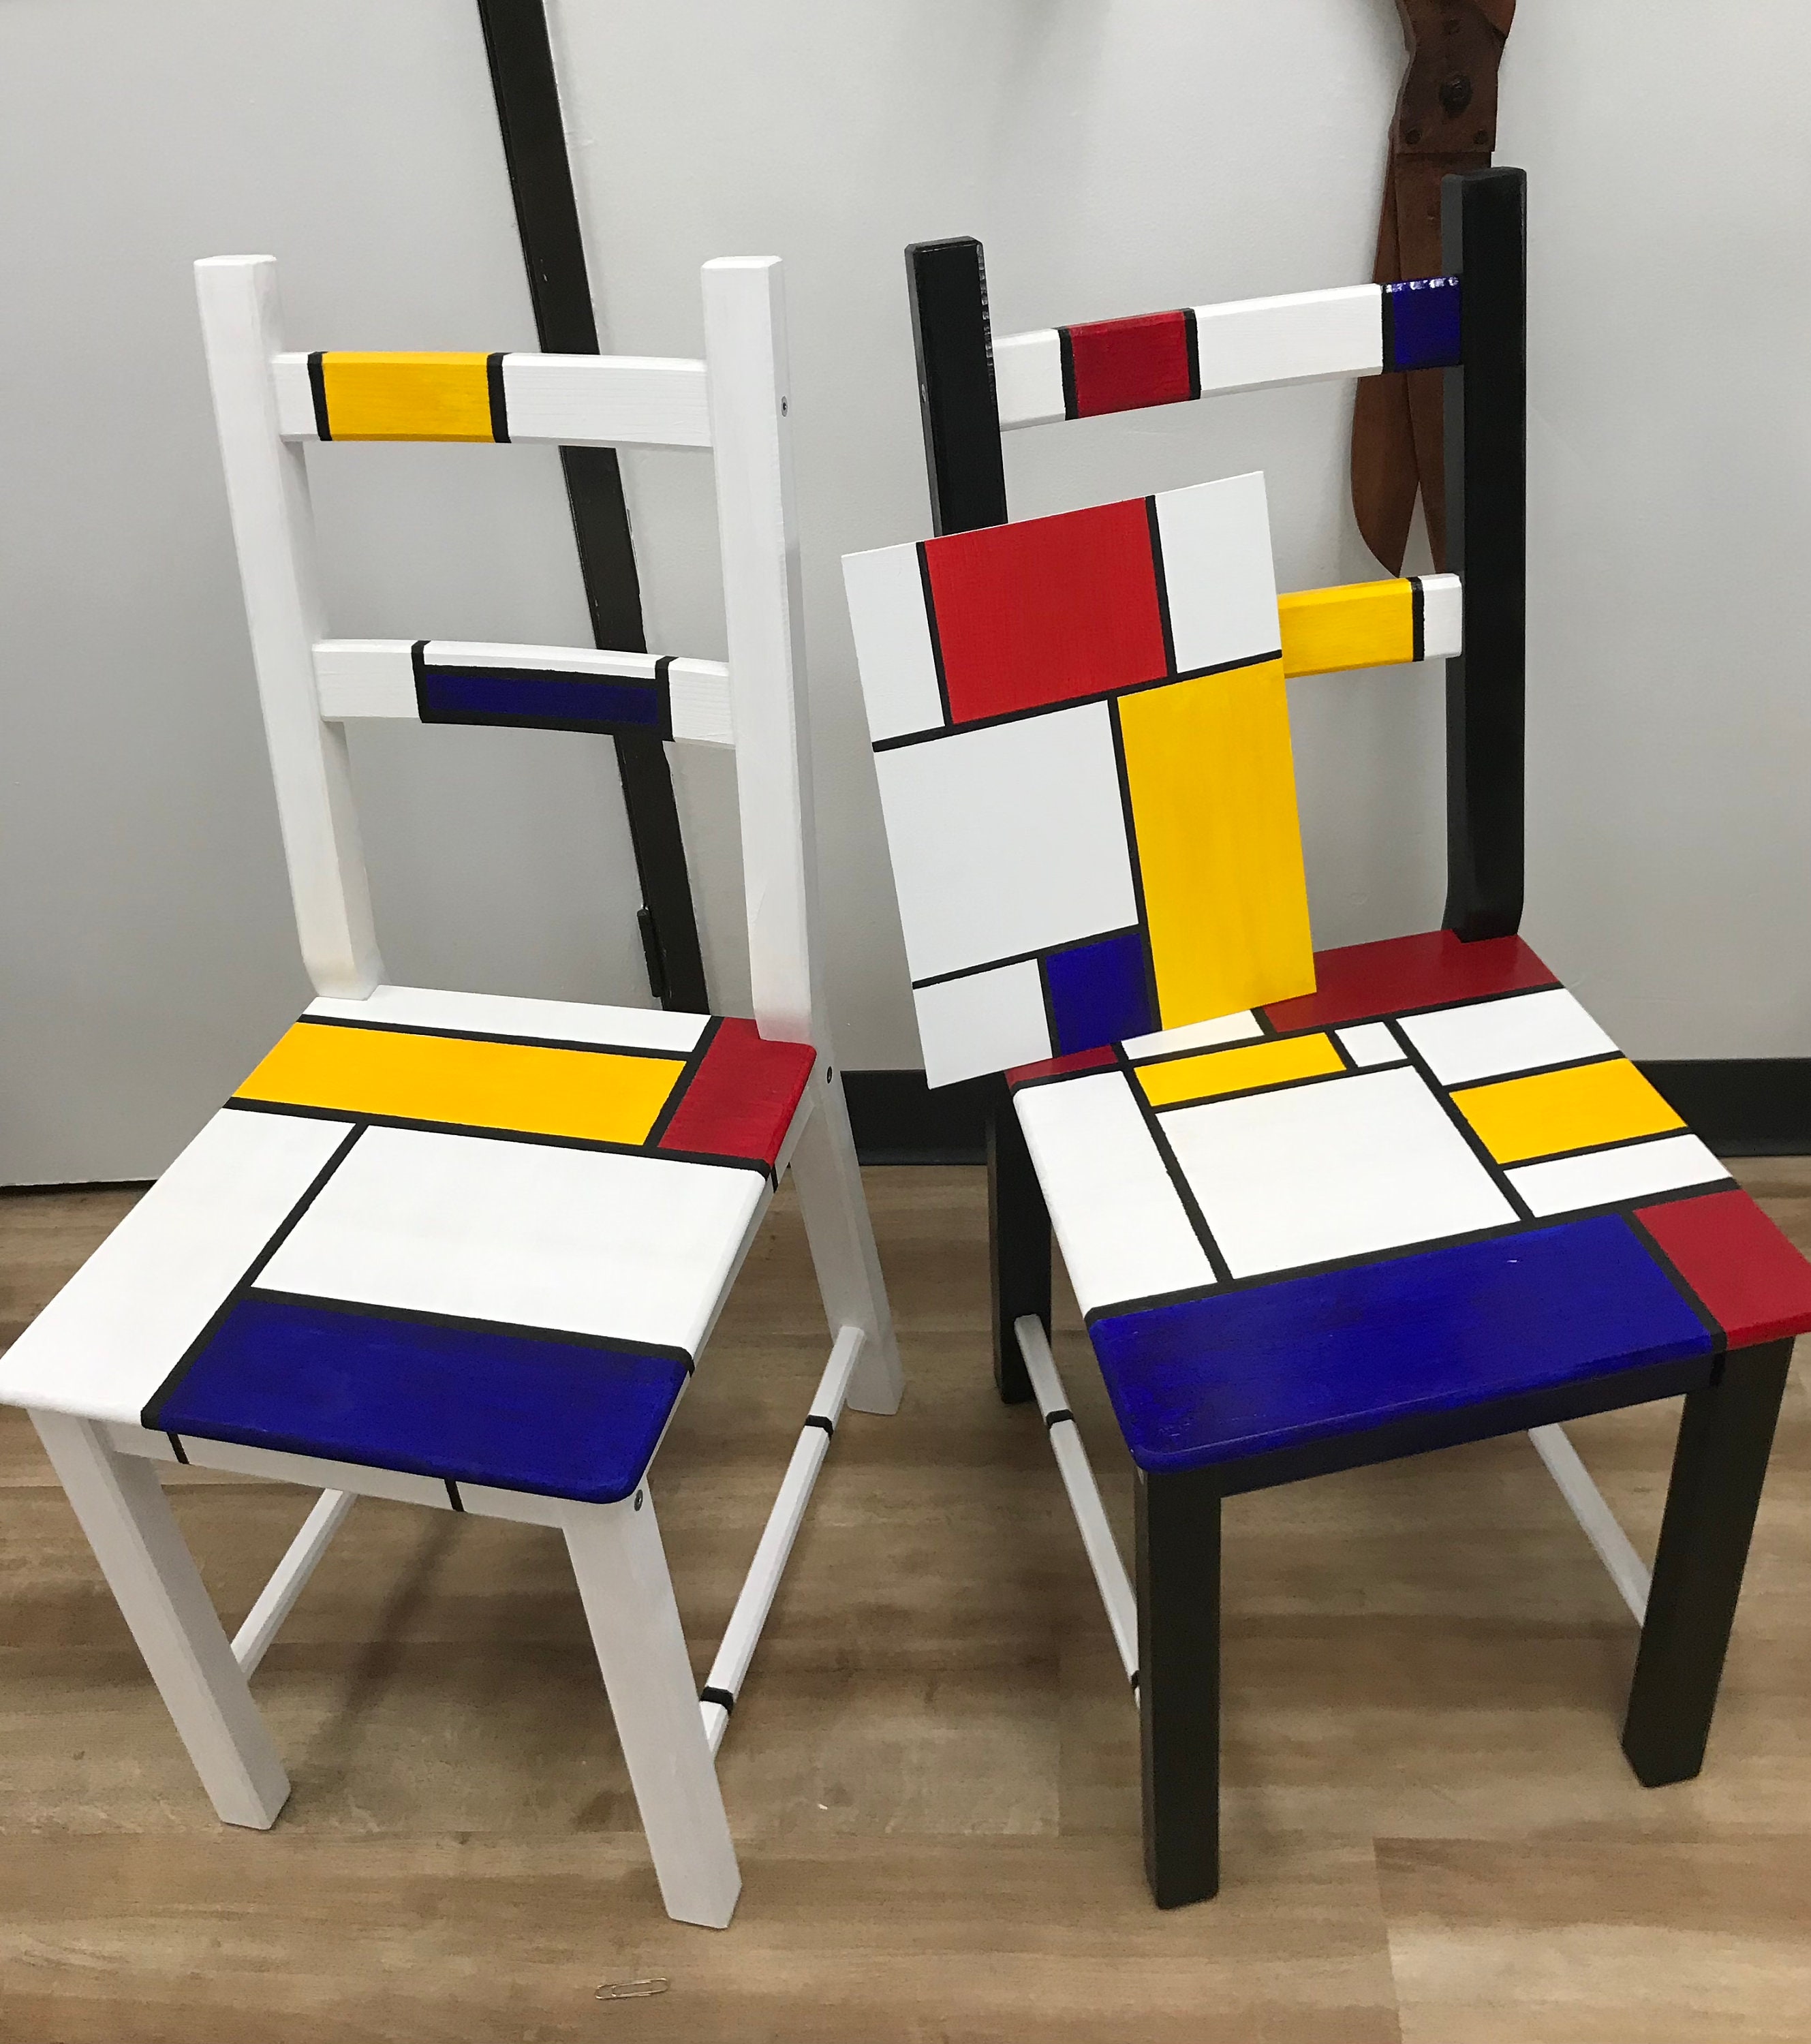 al menos probable oración Piet Mondrian Inspired Pine Wooden Chair - Etsy